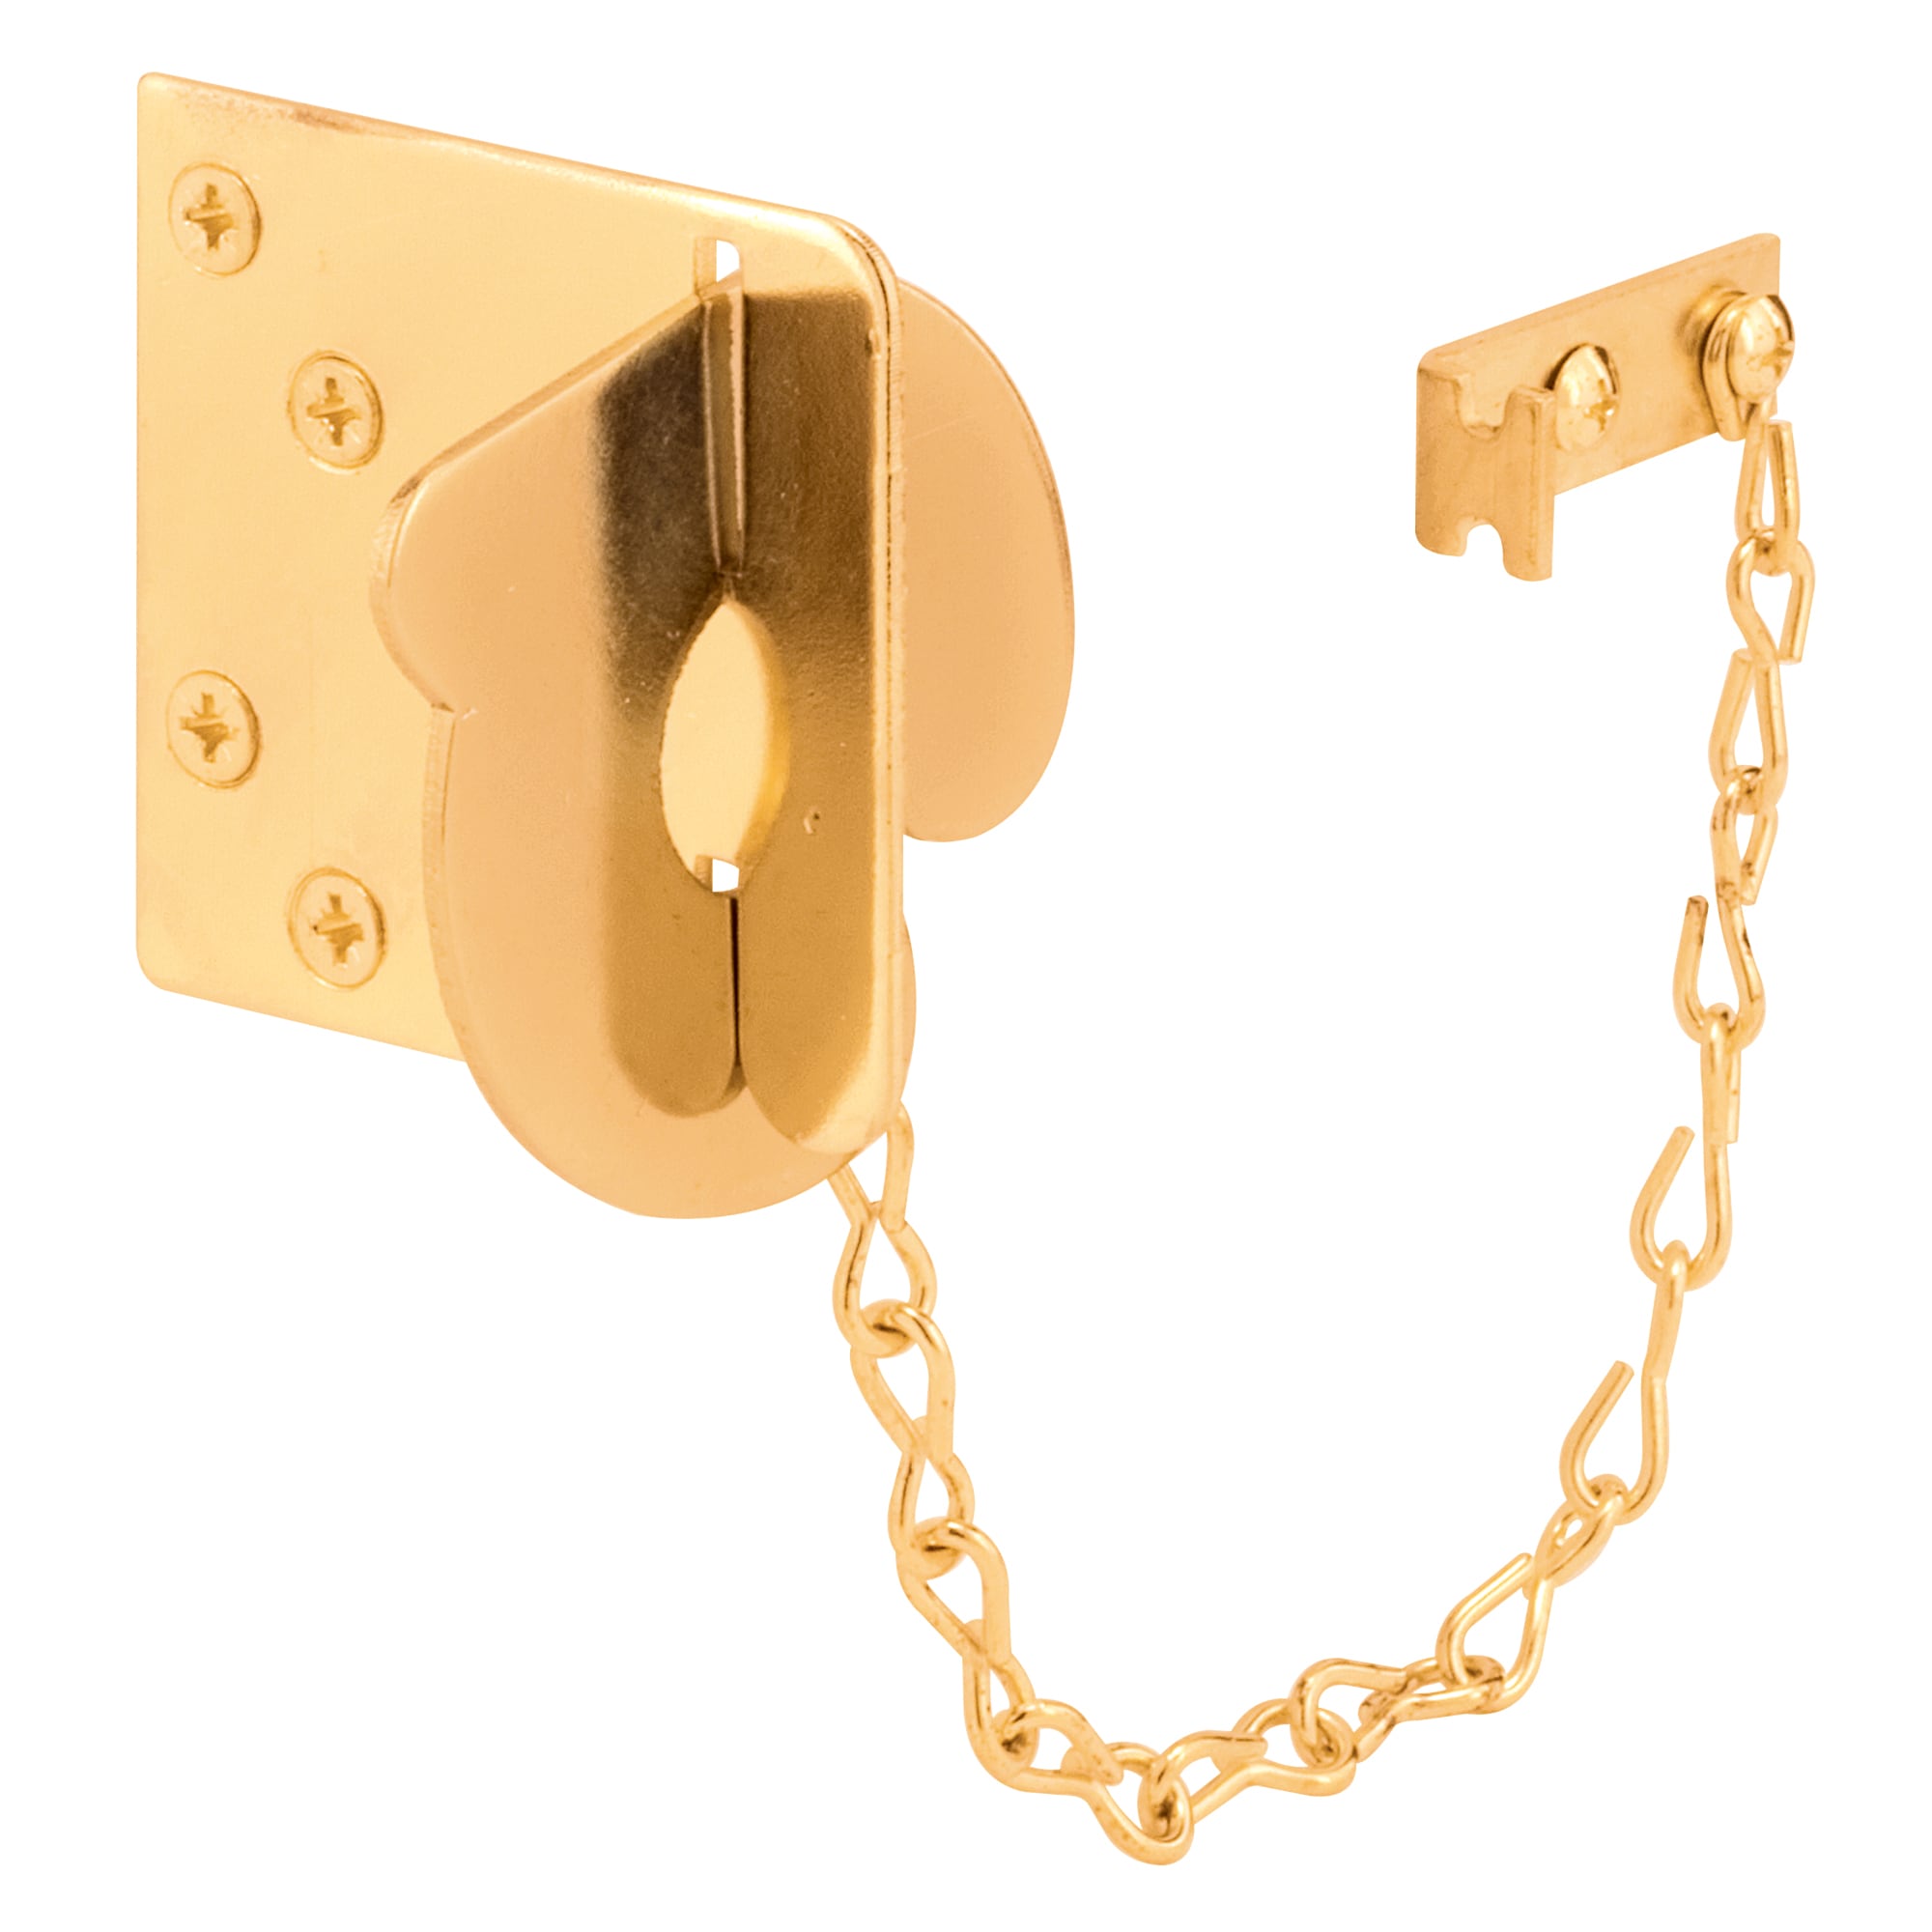 Door Security, Door Locks, Bolts & Chains